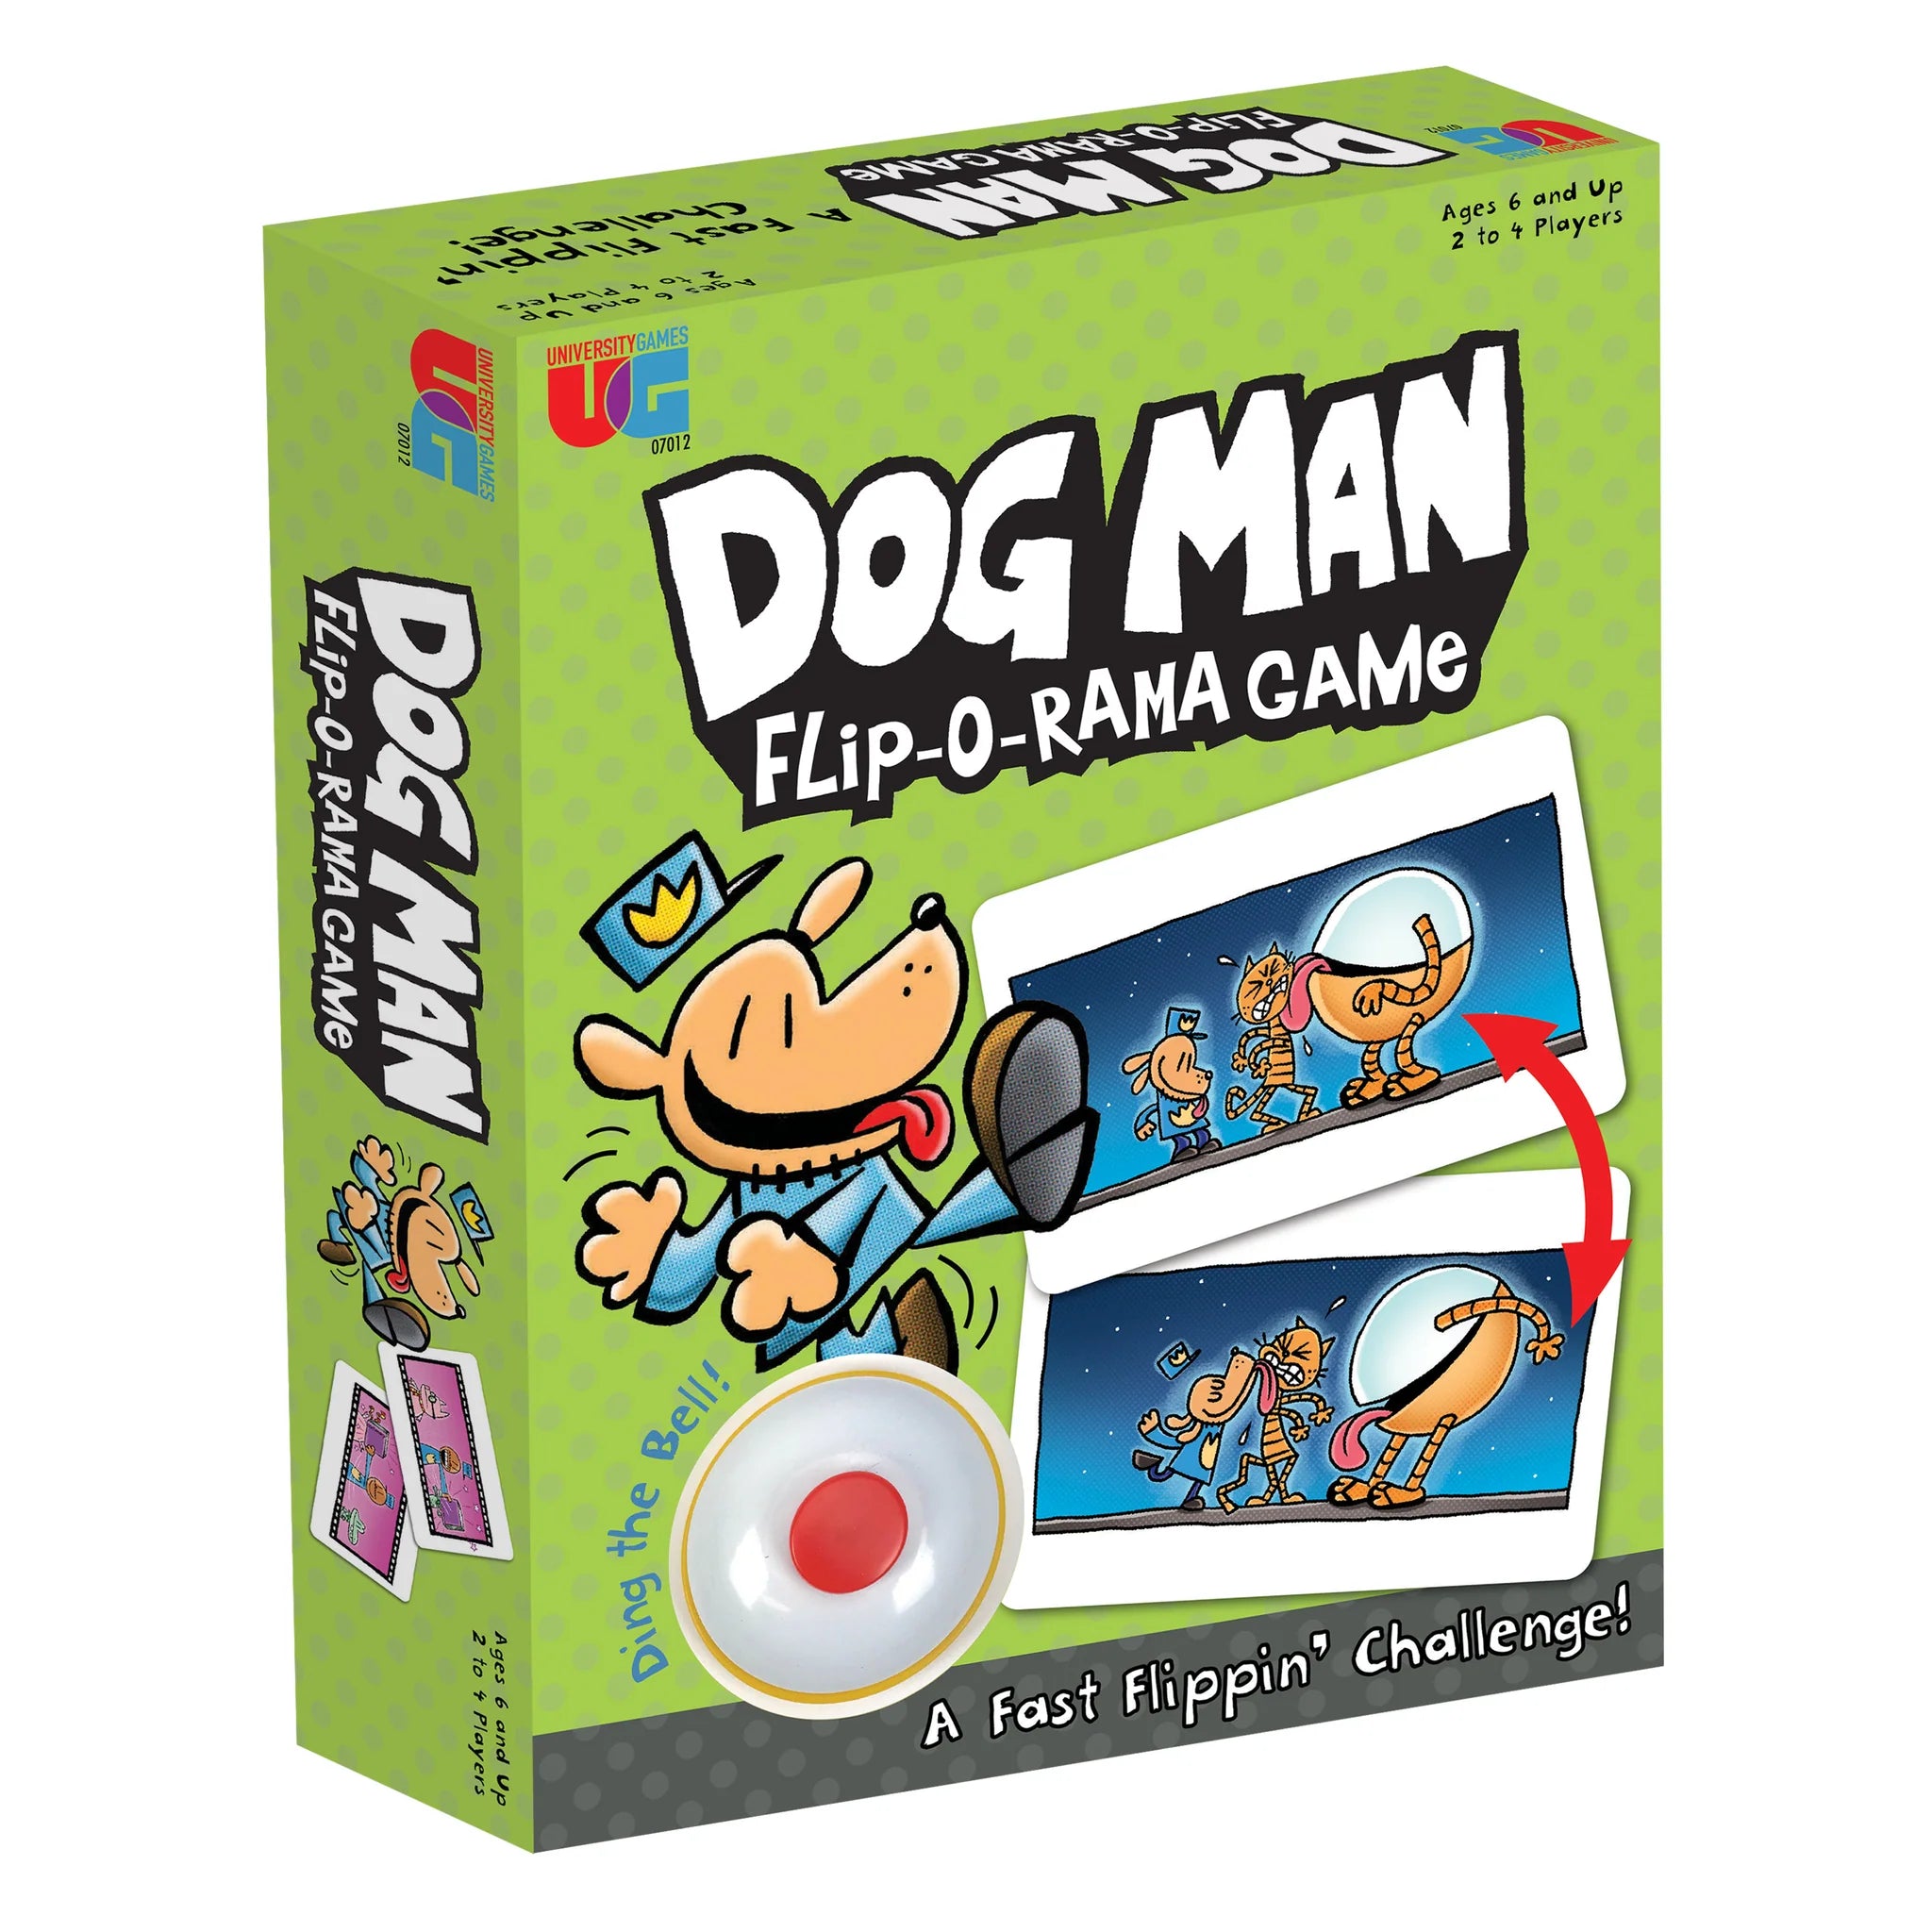 Kids Games | Dog Man Flip-O-Rama Game by Weirs of Baggot Street